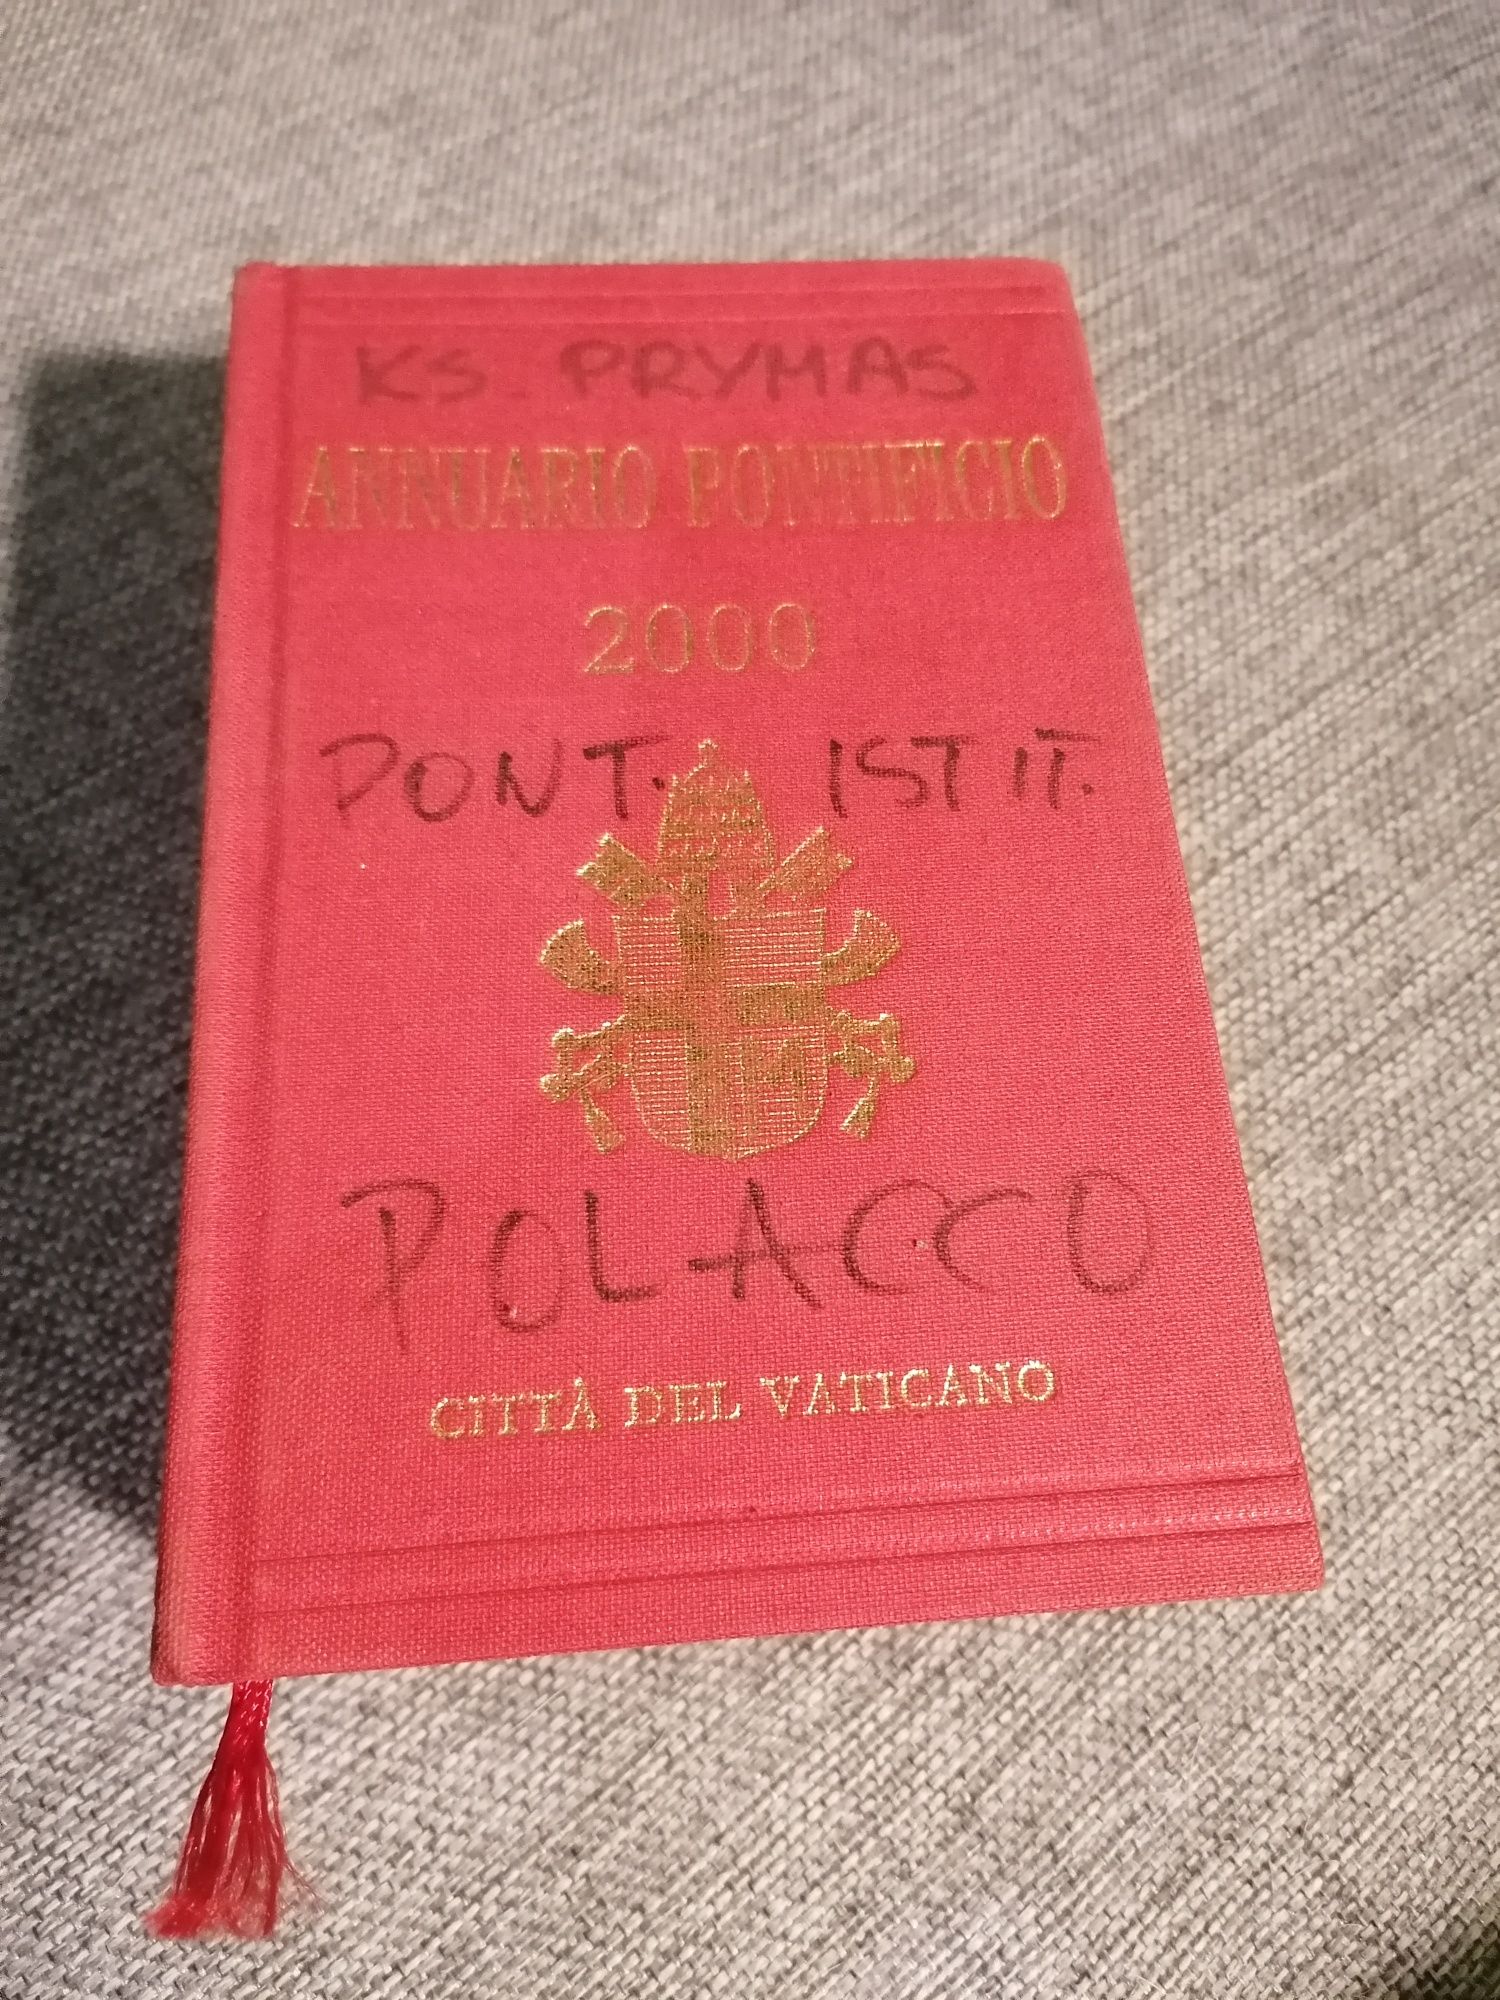 Annuario Pontificio 2000 Spis Danych Kościoła Papież